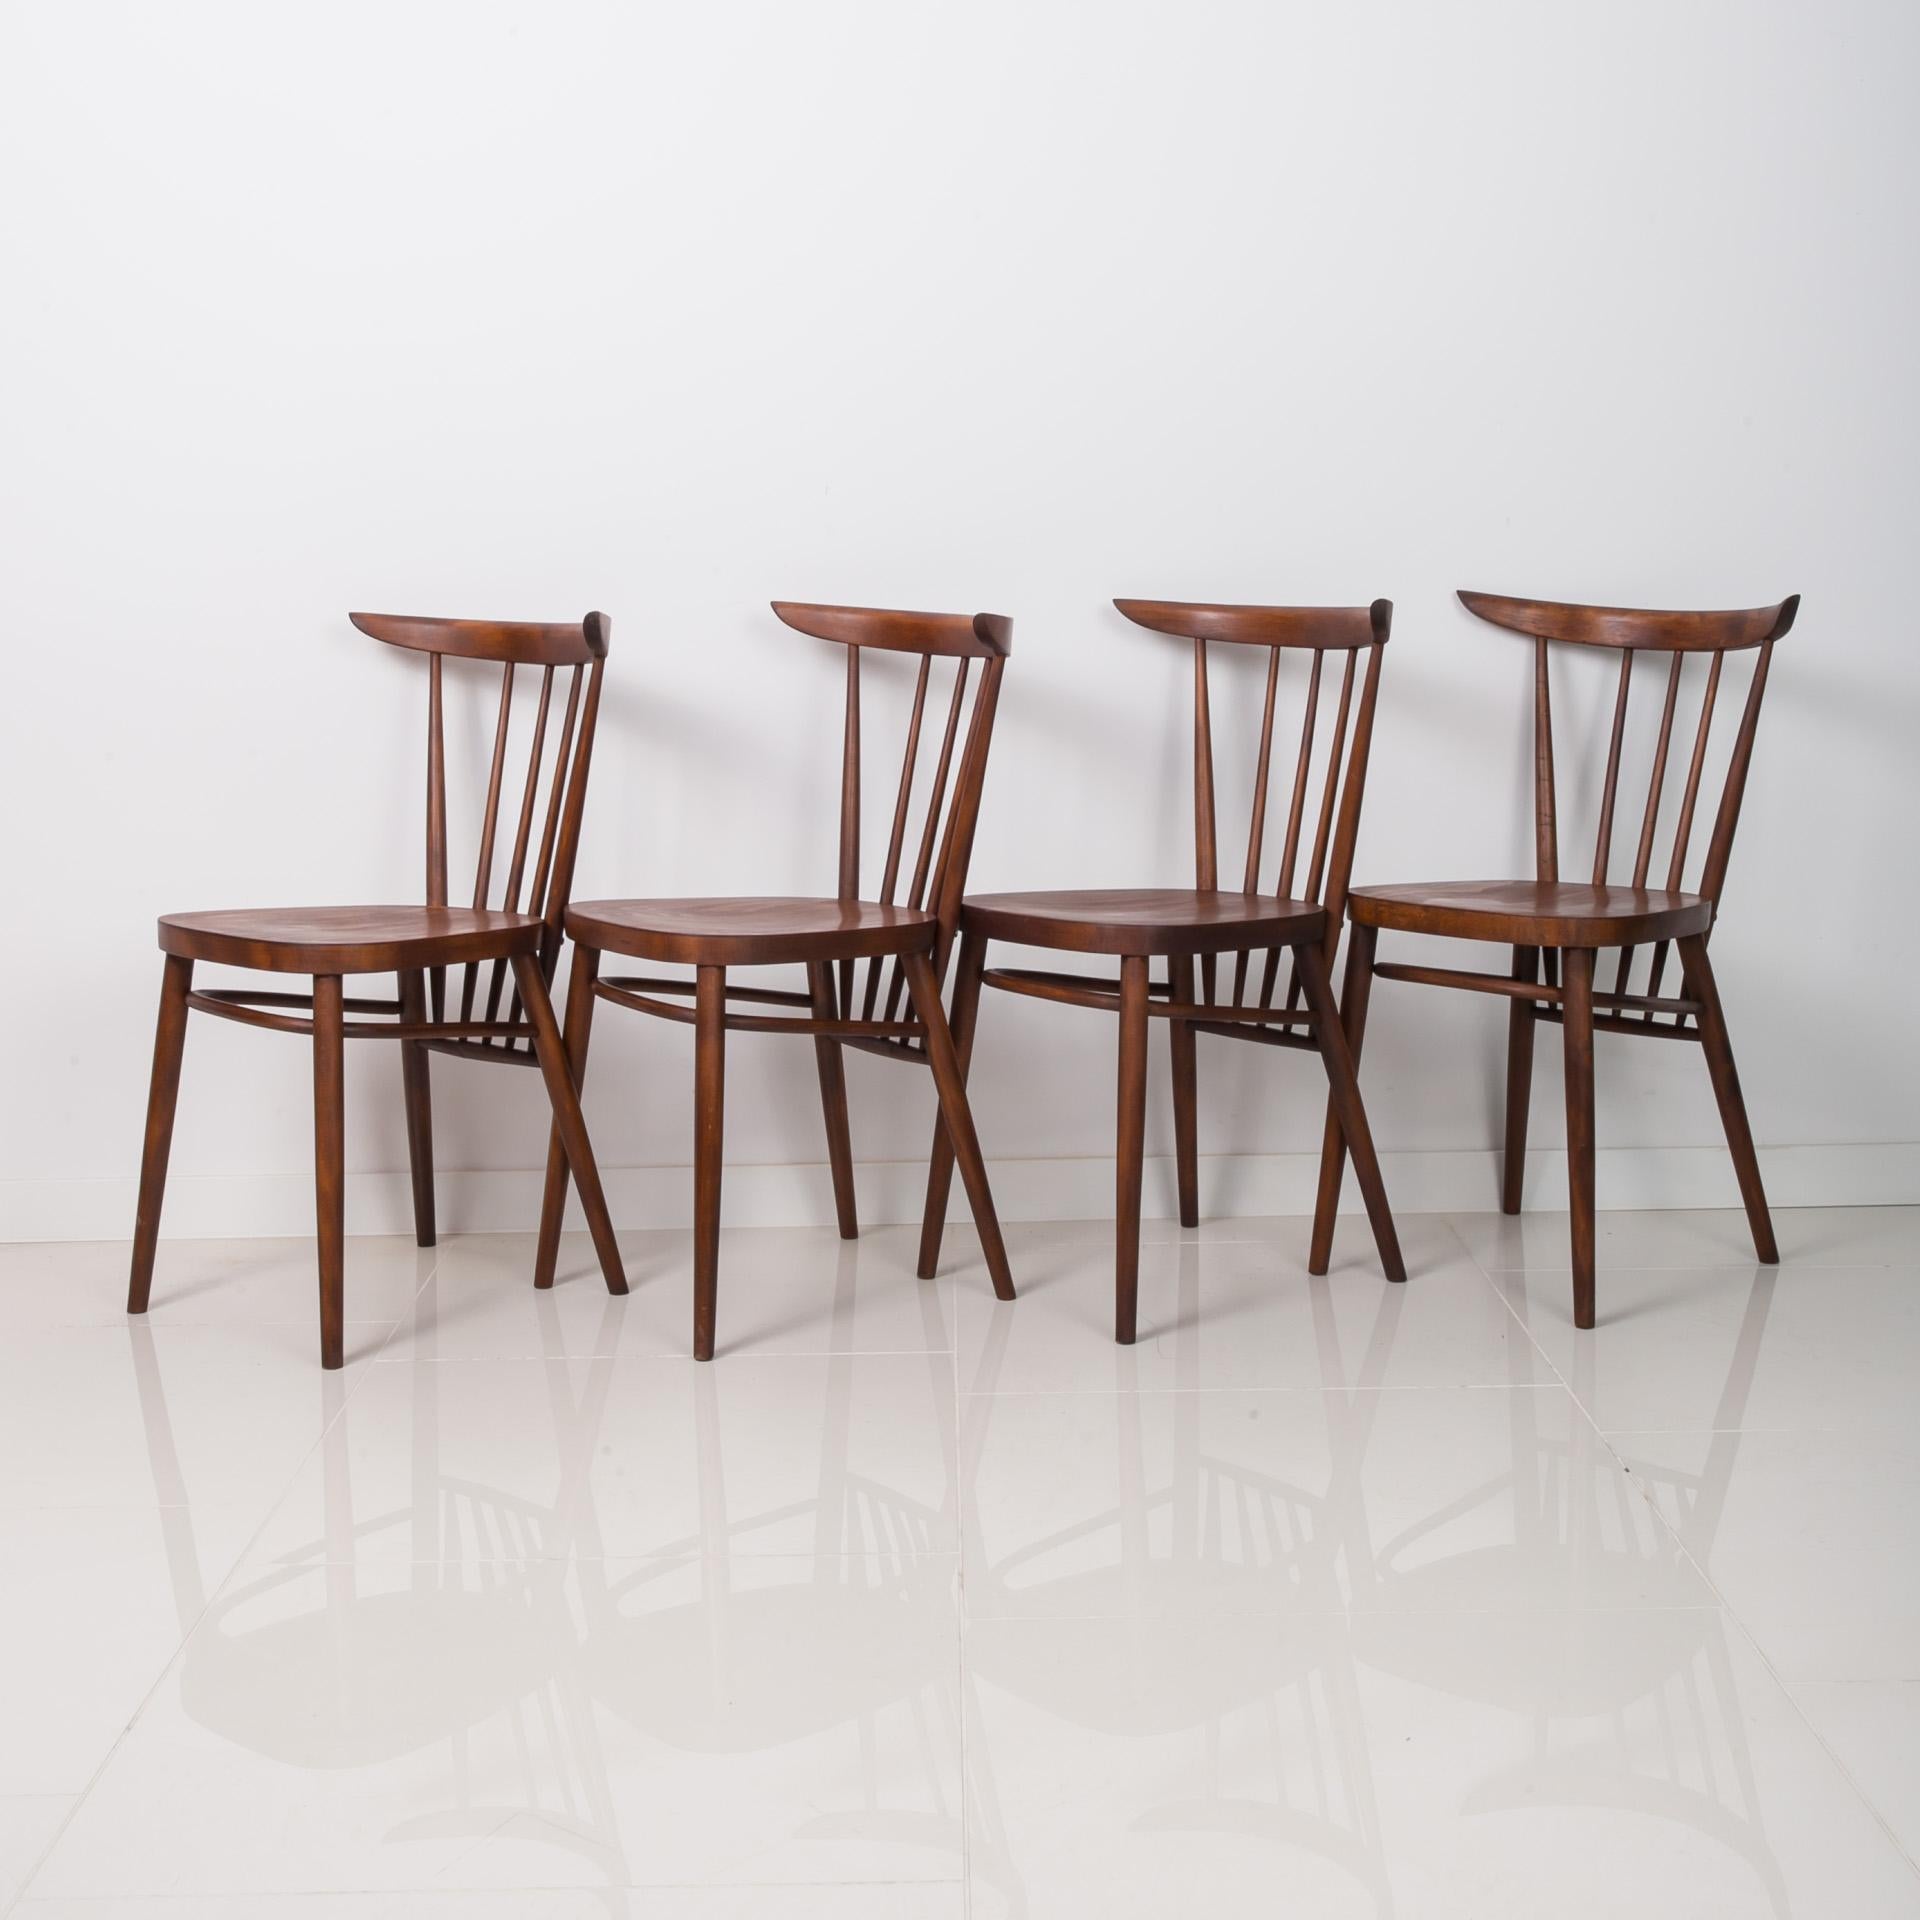 Dieses Set aus vier Vintage-Esszimmerstühlen wurde in den 1960er Jahren vom tschechischen Designer František Jirak entworfen und von Tatra Nabytok hergestellt. Sie sind aus Buchenholz gefertigt. Die Stühle wurden vollständig restauriert und mit